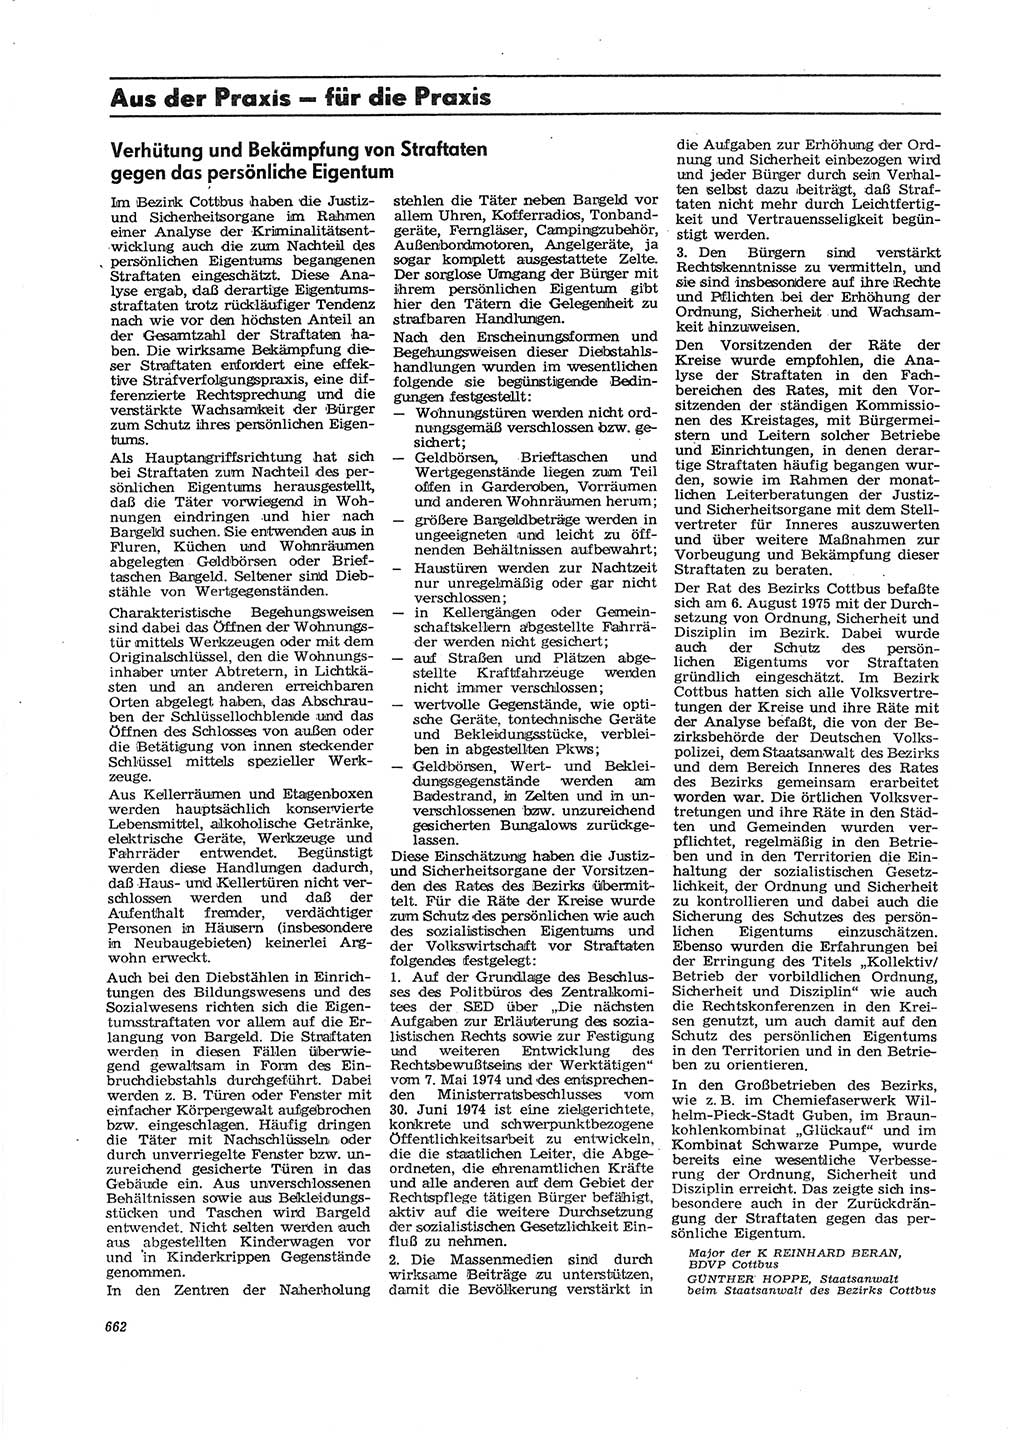 Neue Justiz (NJ), Zeitschrift für Recht und Rechtswissenschaft [Deutsche Demokratische Republik (DDR)], 29. Jahrgang 1975, Seite 662 (NJ DDR 1975, S. 662)